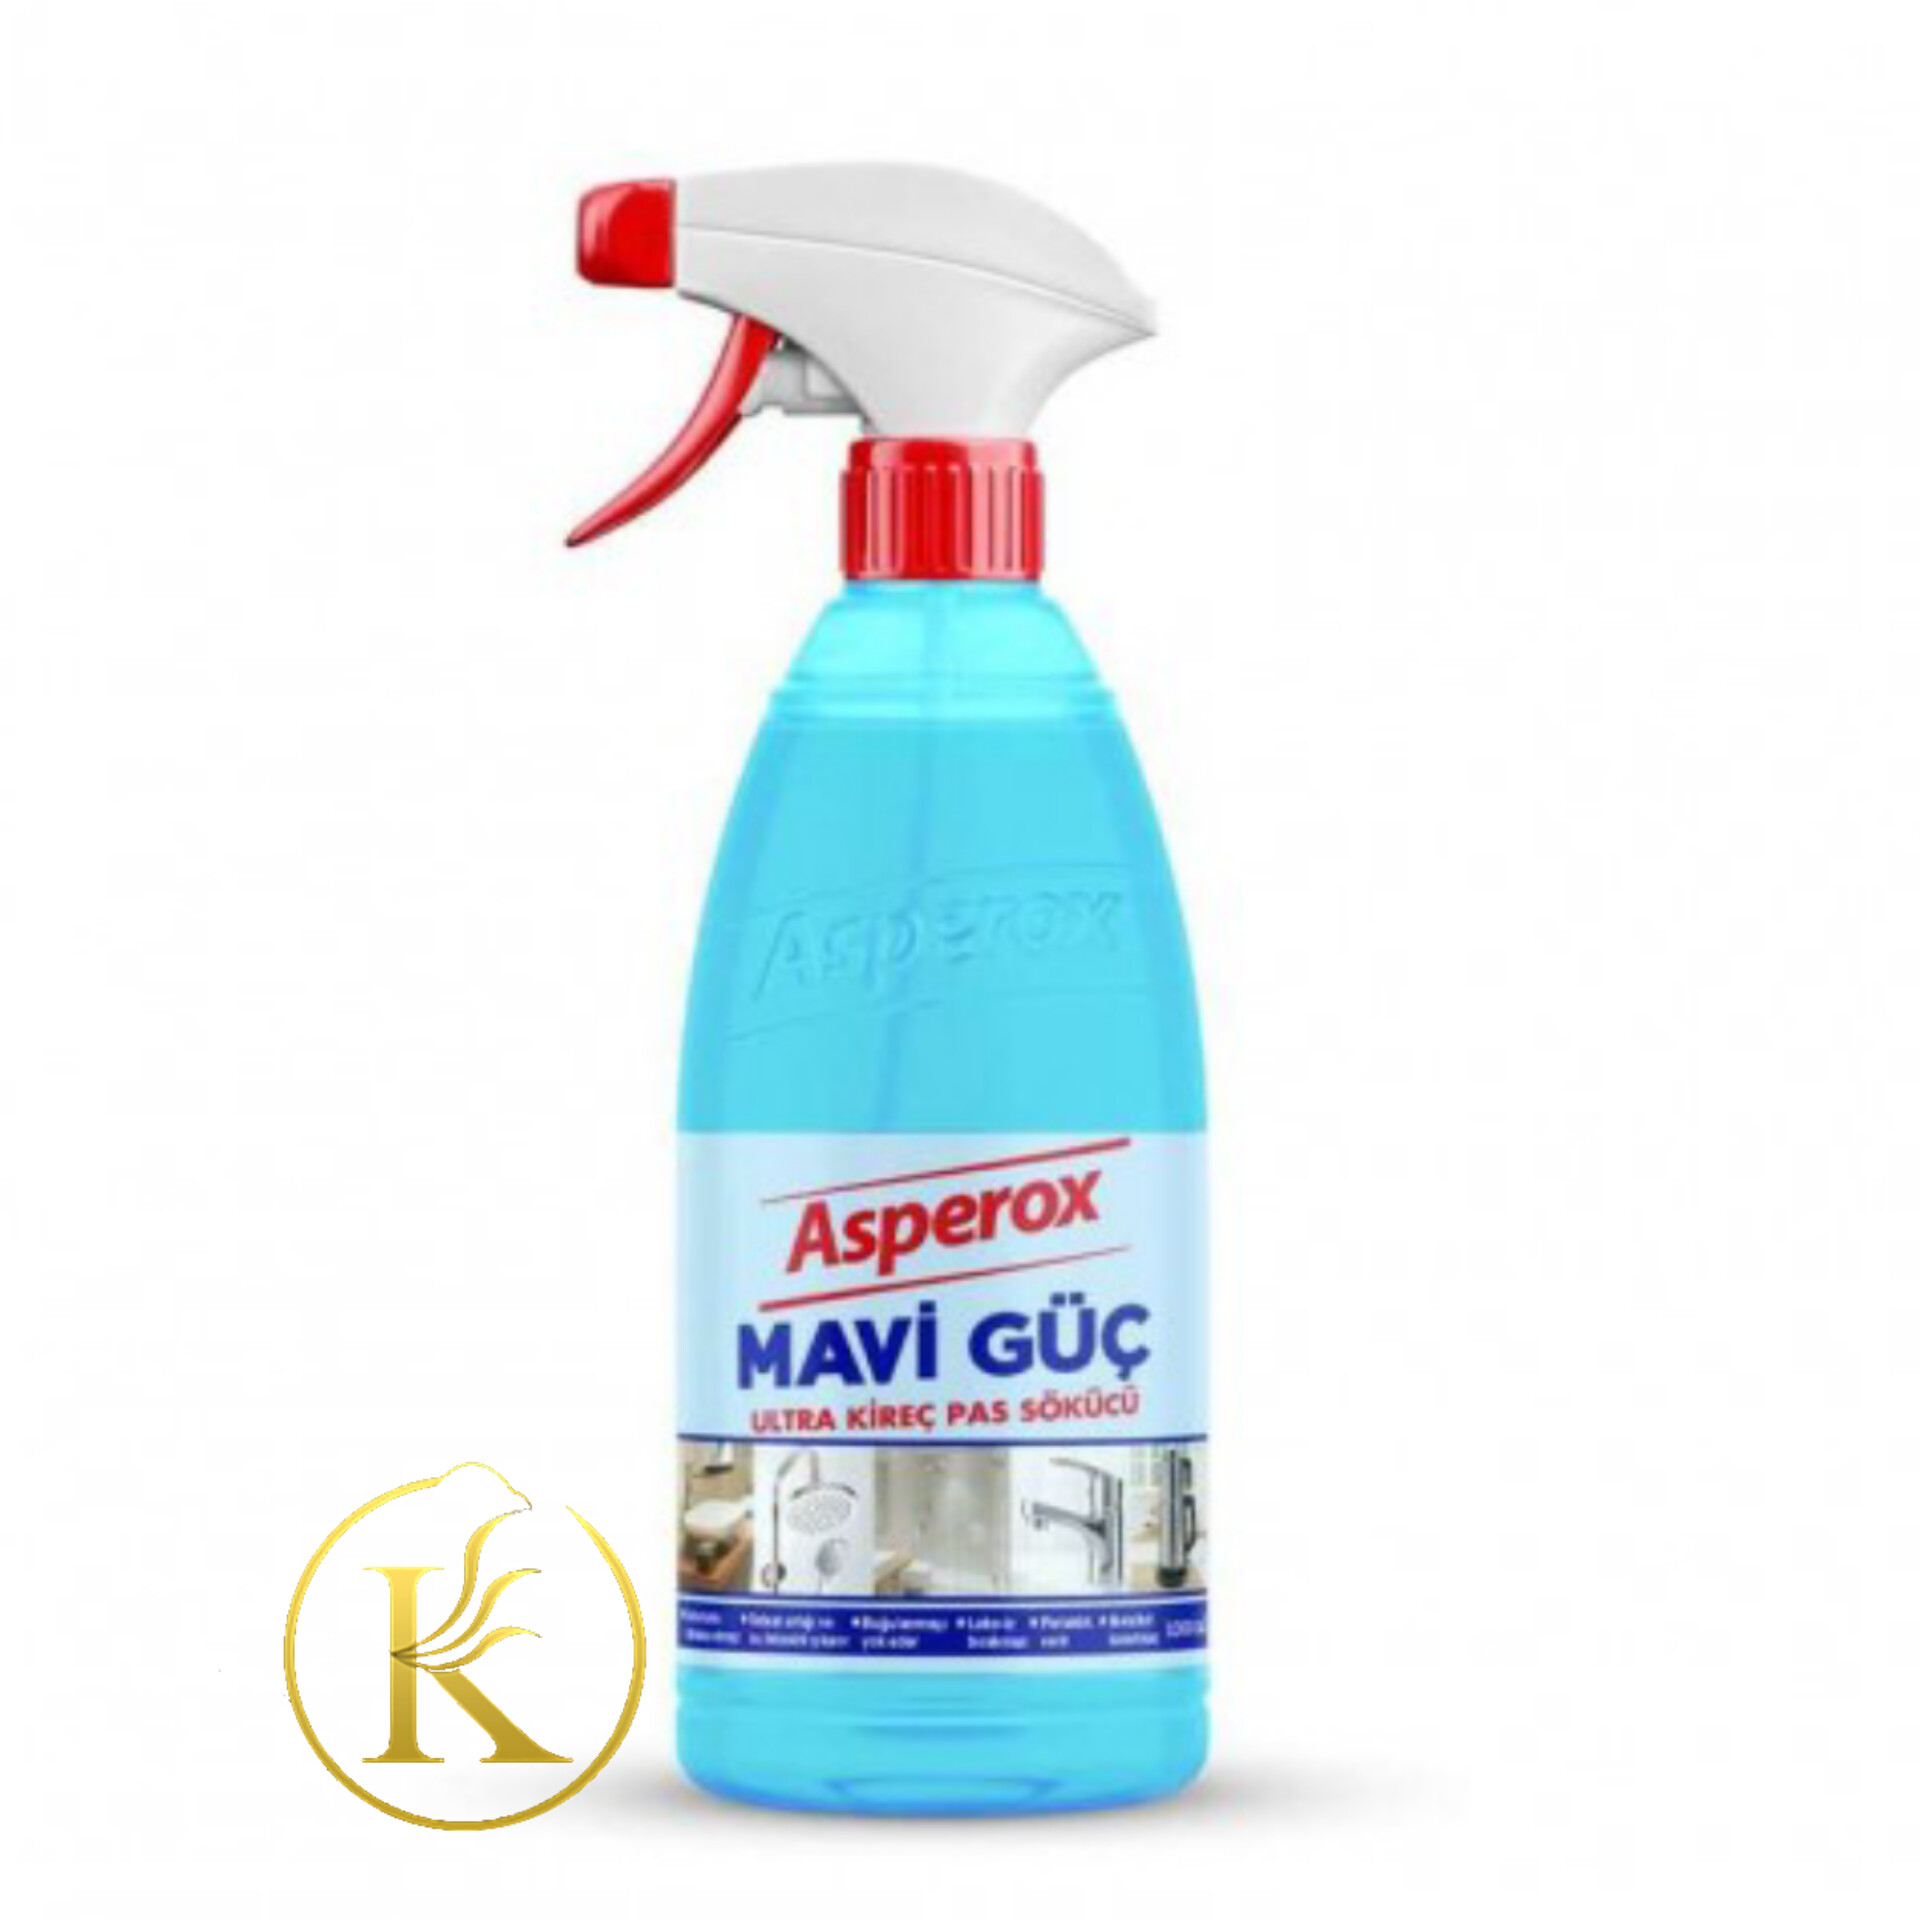 اسپری پاک کننده سطوح و شیرآلات آسپروکس ماوی گوچ یک لیتر asperox mavi guc